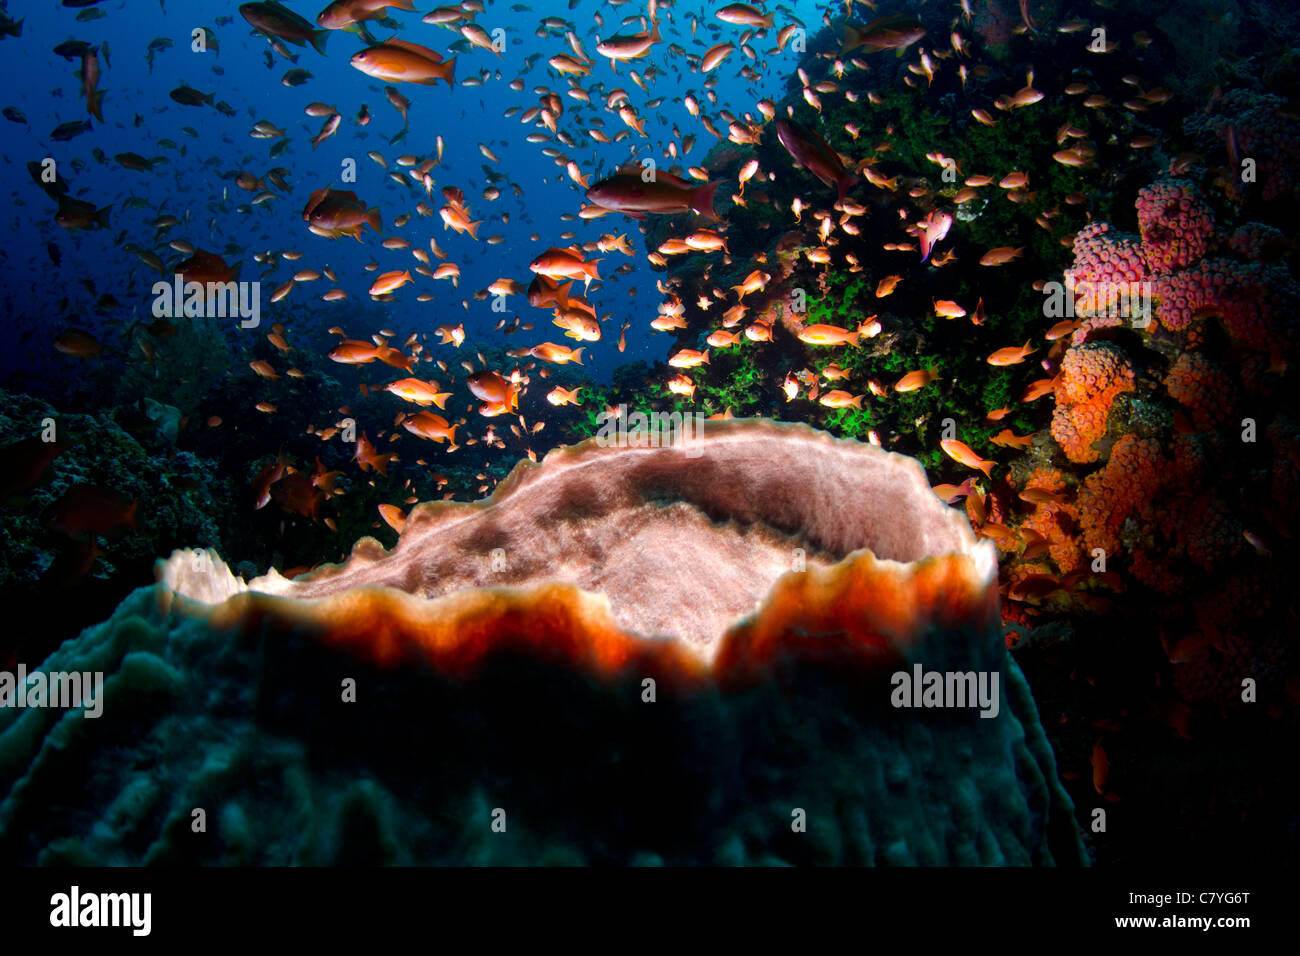 Filippine Coral reef subacquea, Anilao, Coral reef, reef tropicali, canna, spugna, scuba diving, oceano mare, acqua azzurra, pesce Foto Stock